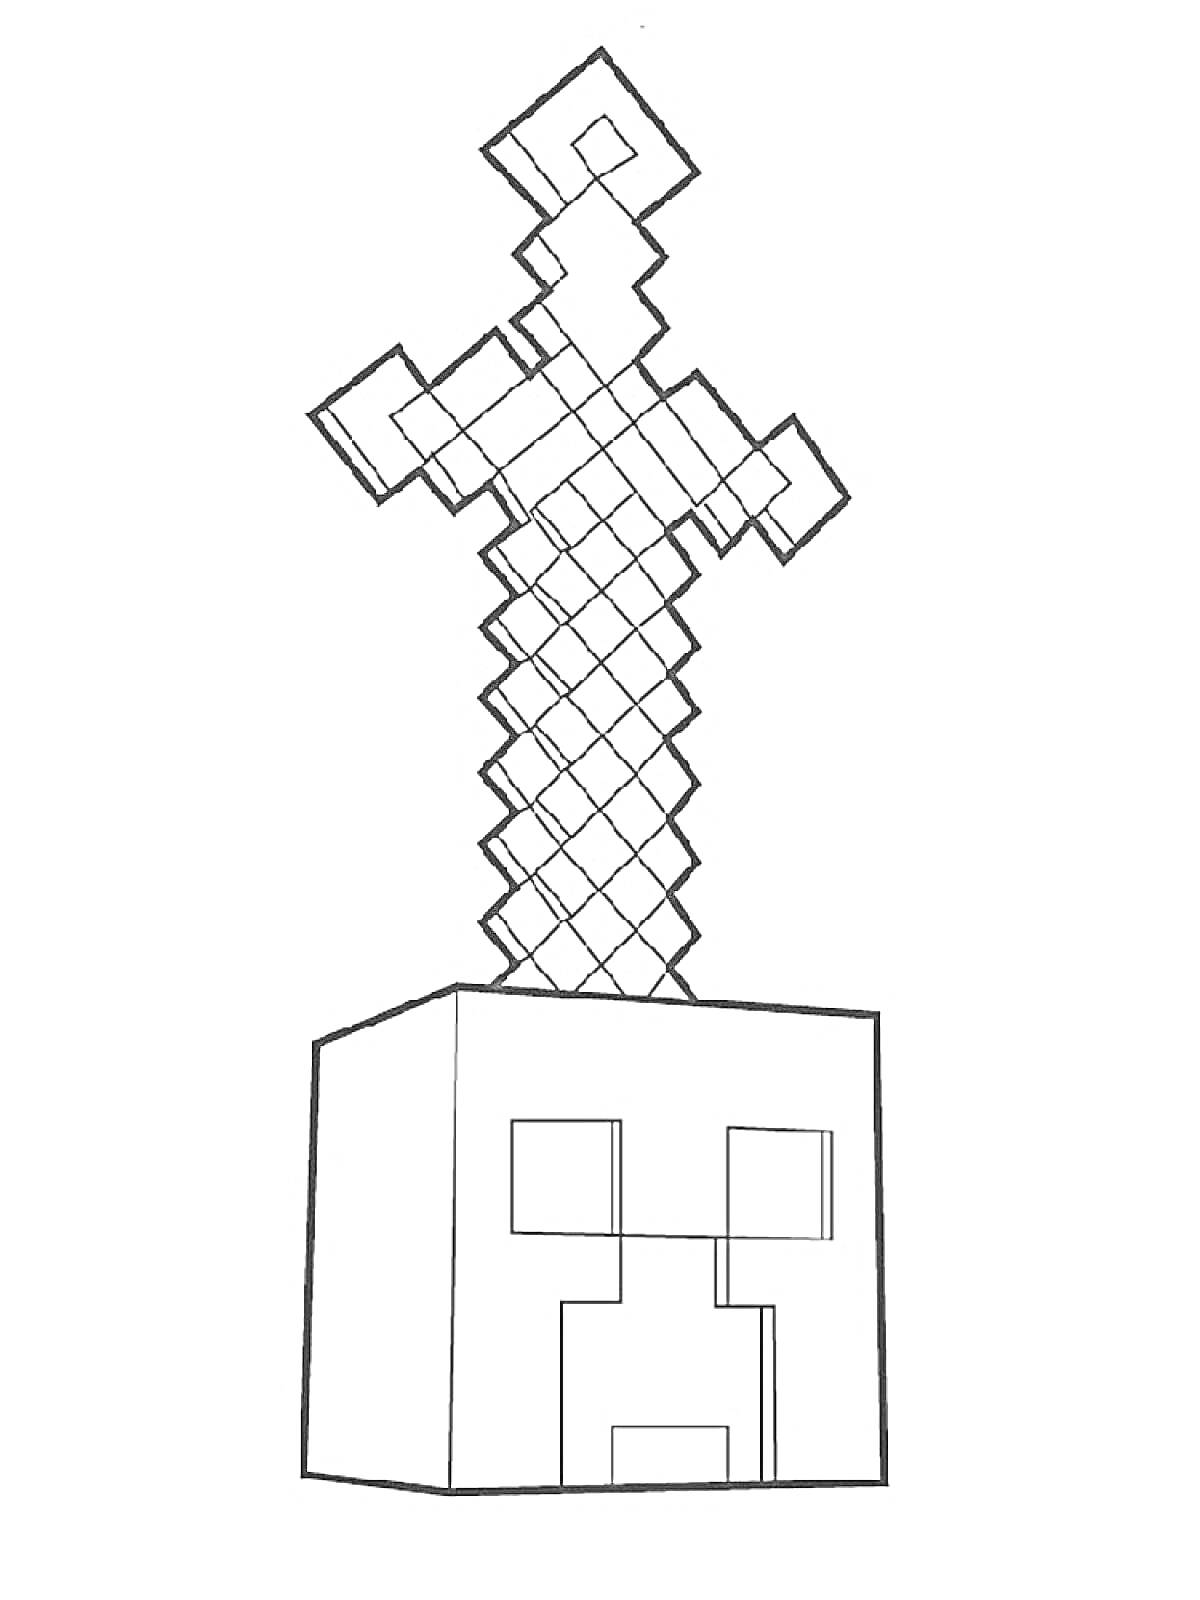 Раскраска Пиксельный меч, воткнутый в голову монстра из Майнкрафт